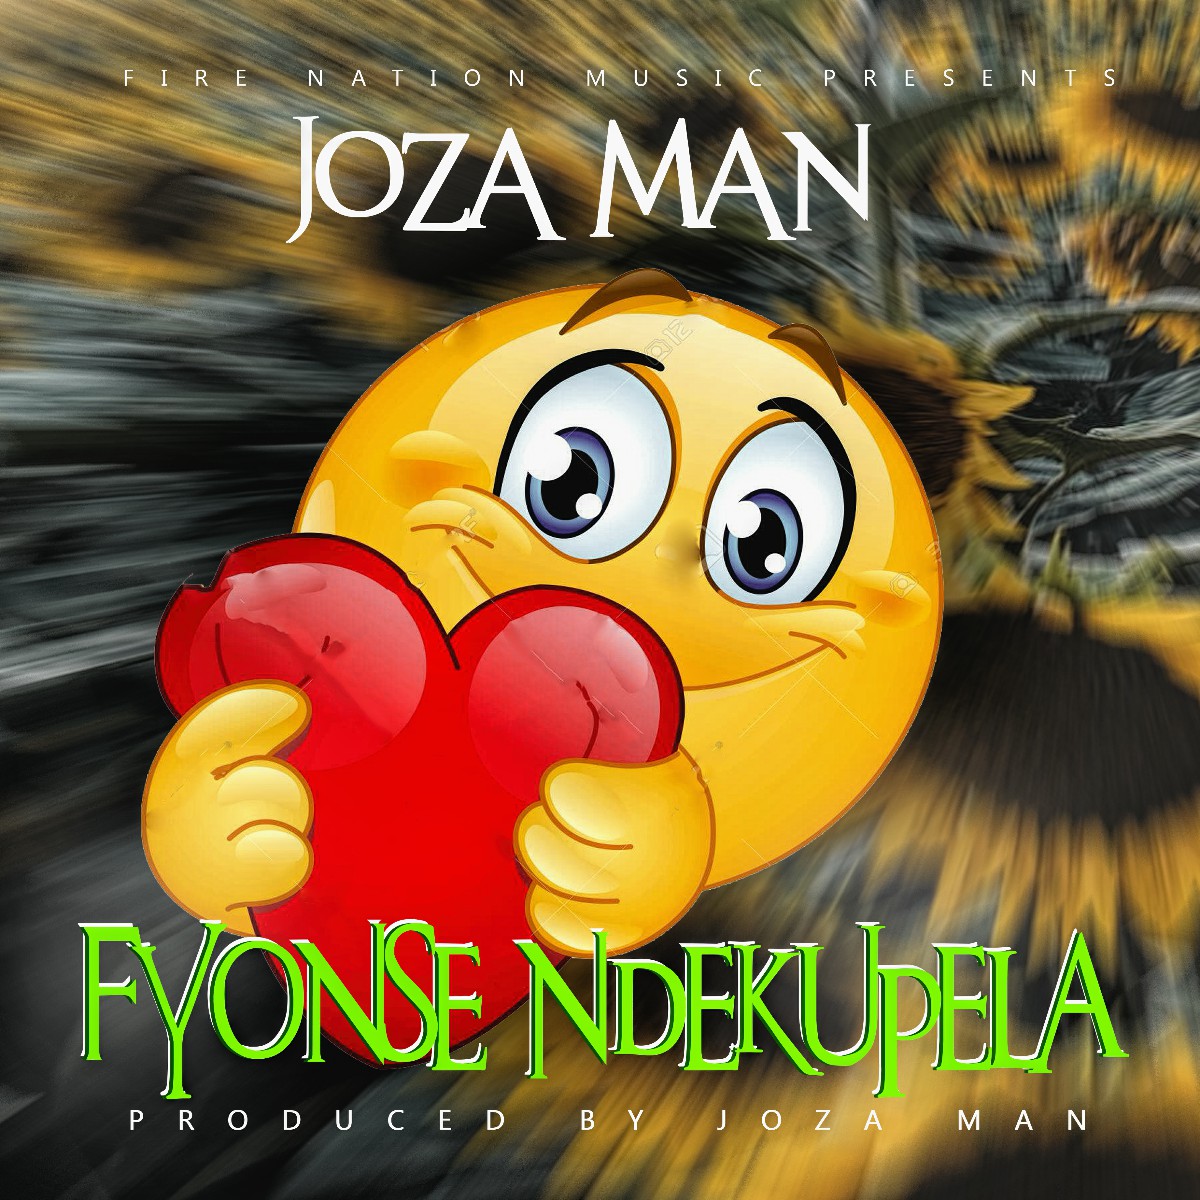 Joza Man - Fyonse Ndekupela